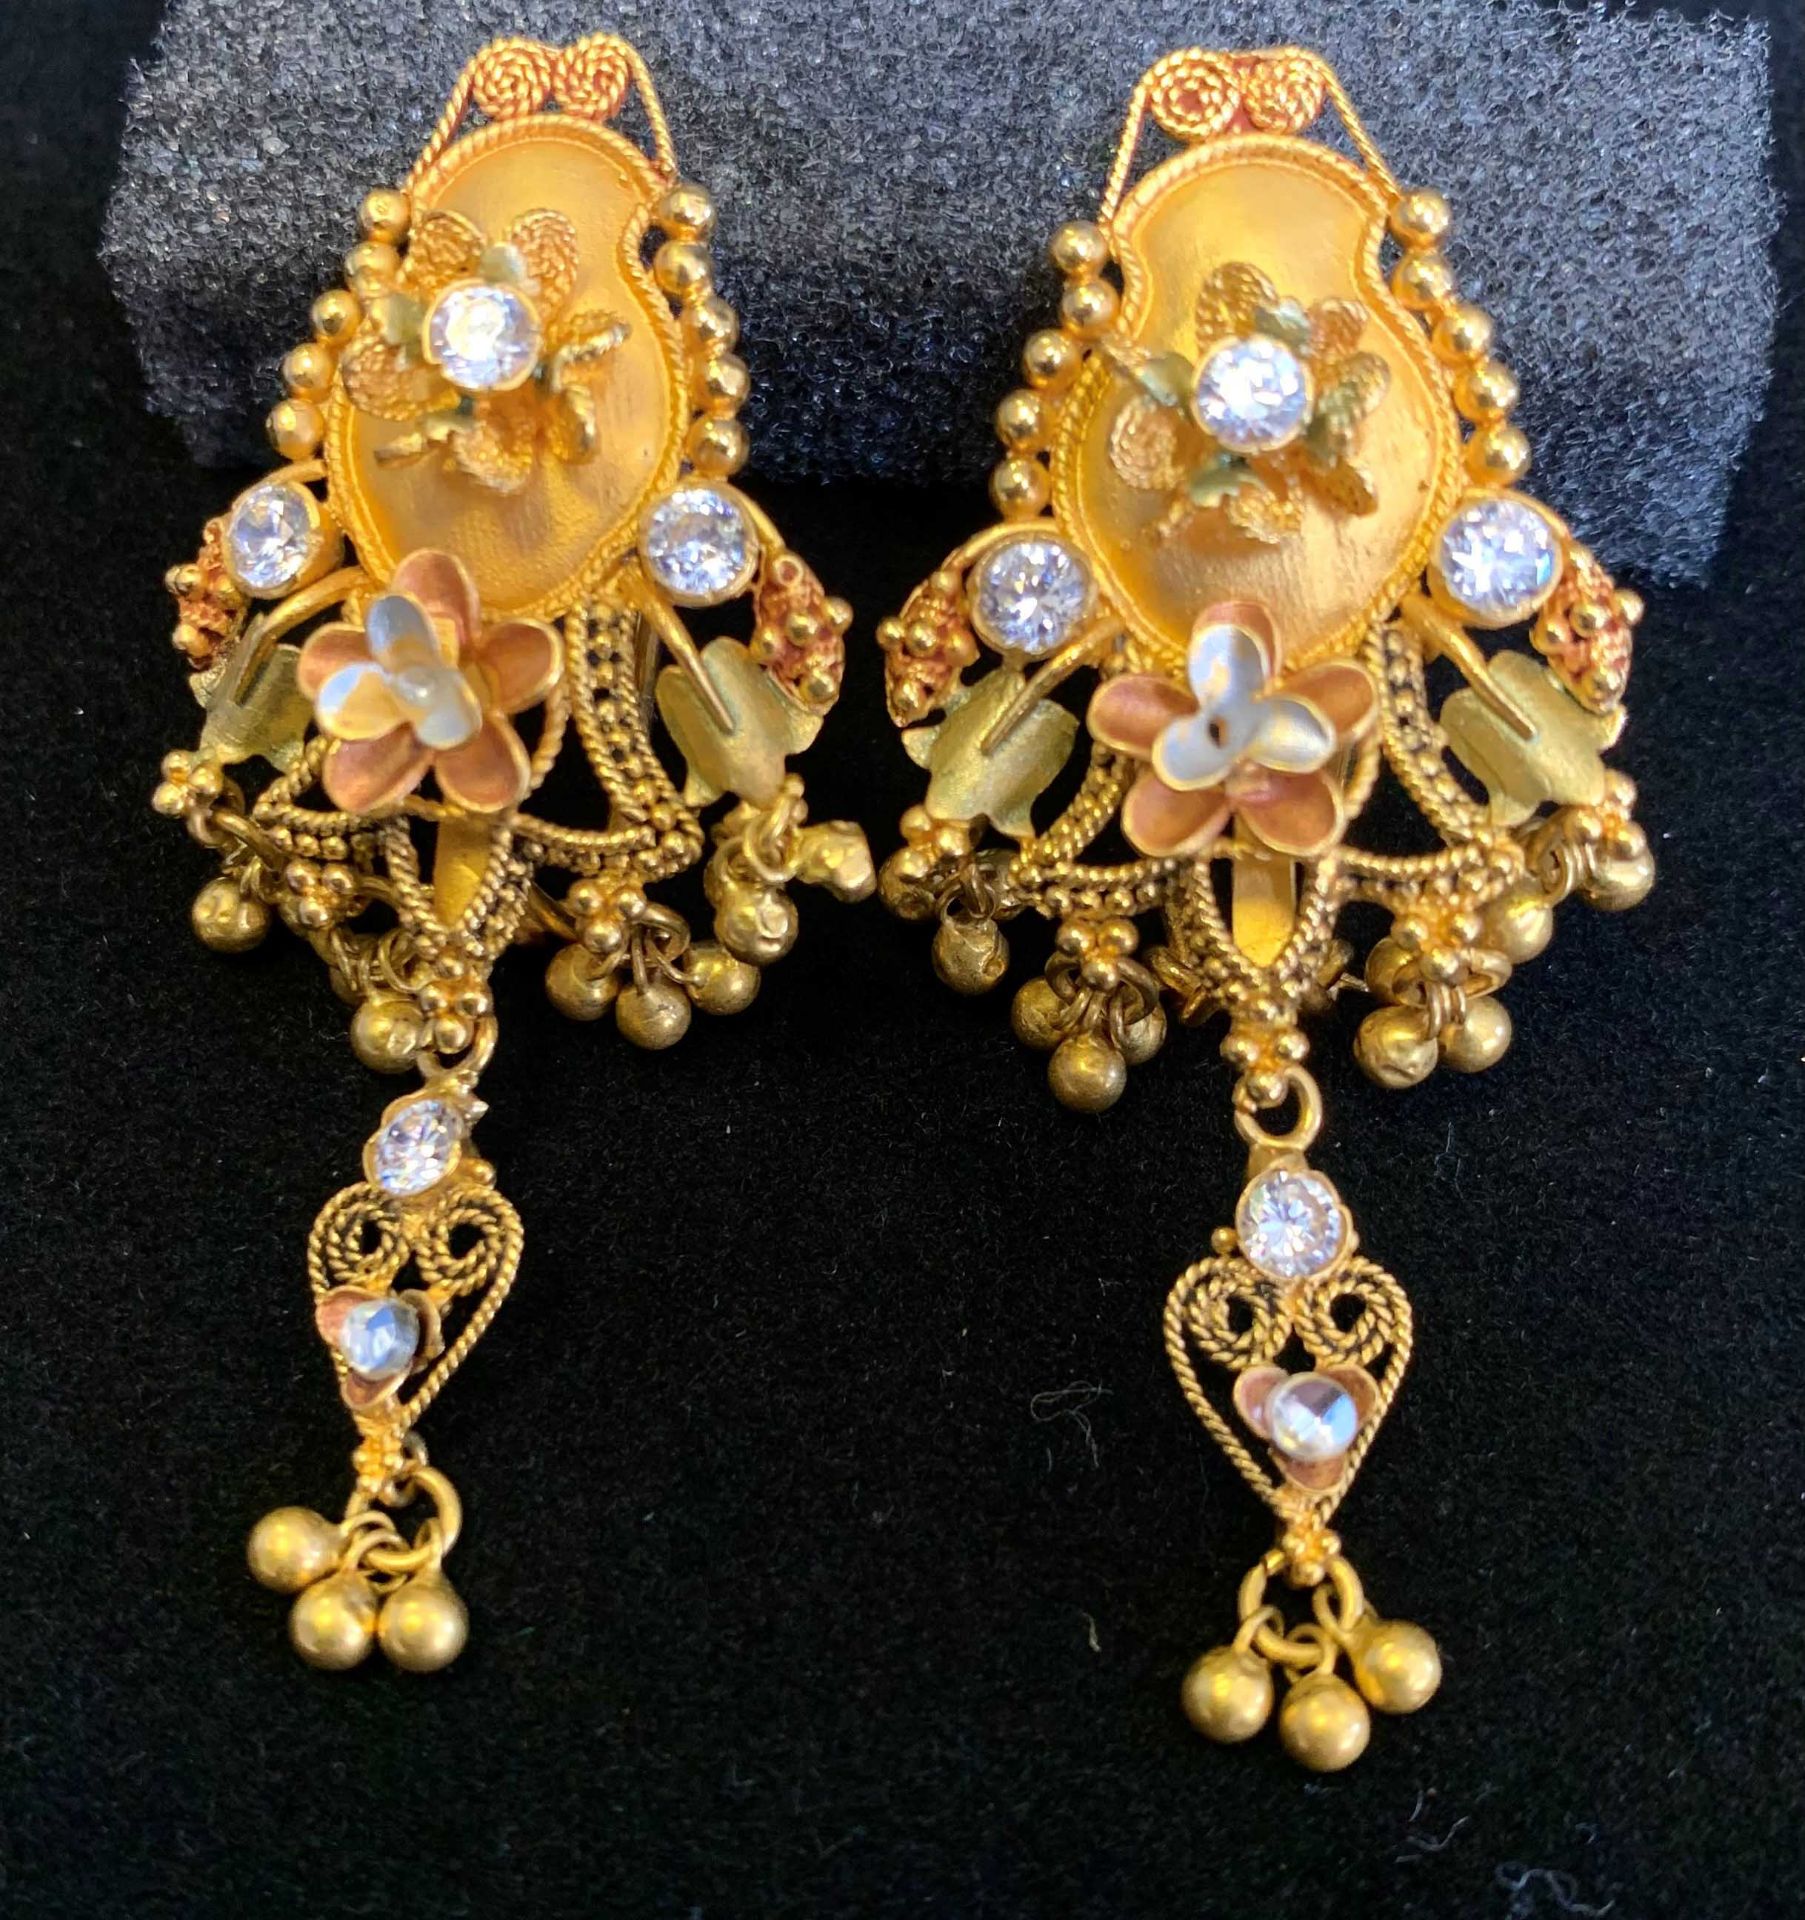 Pair of Ladies Pierced Ear Ornate Earrings, Gold Set 22 Carat .916 Sheffield Assay Mark 23.105